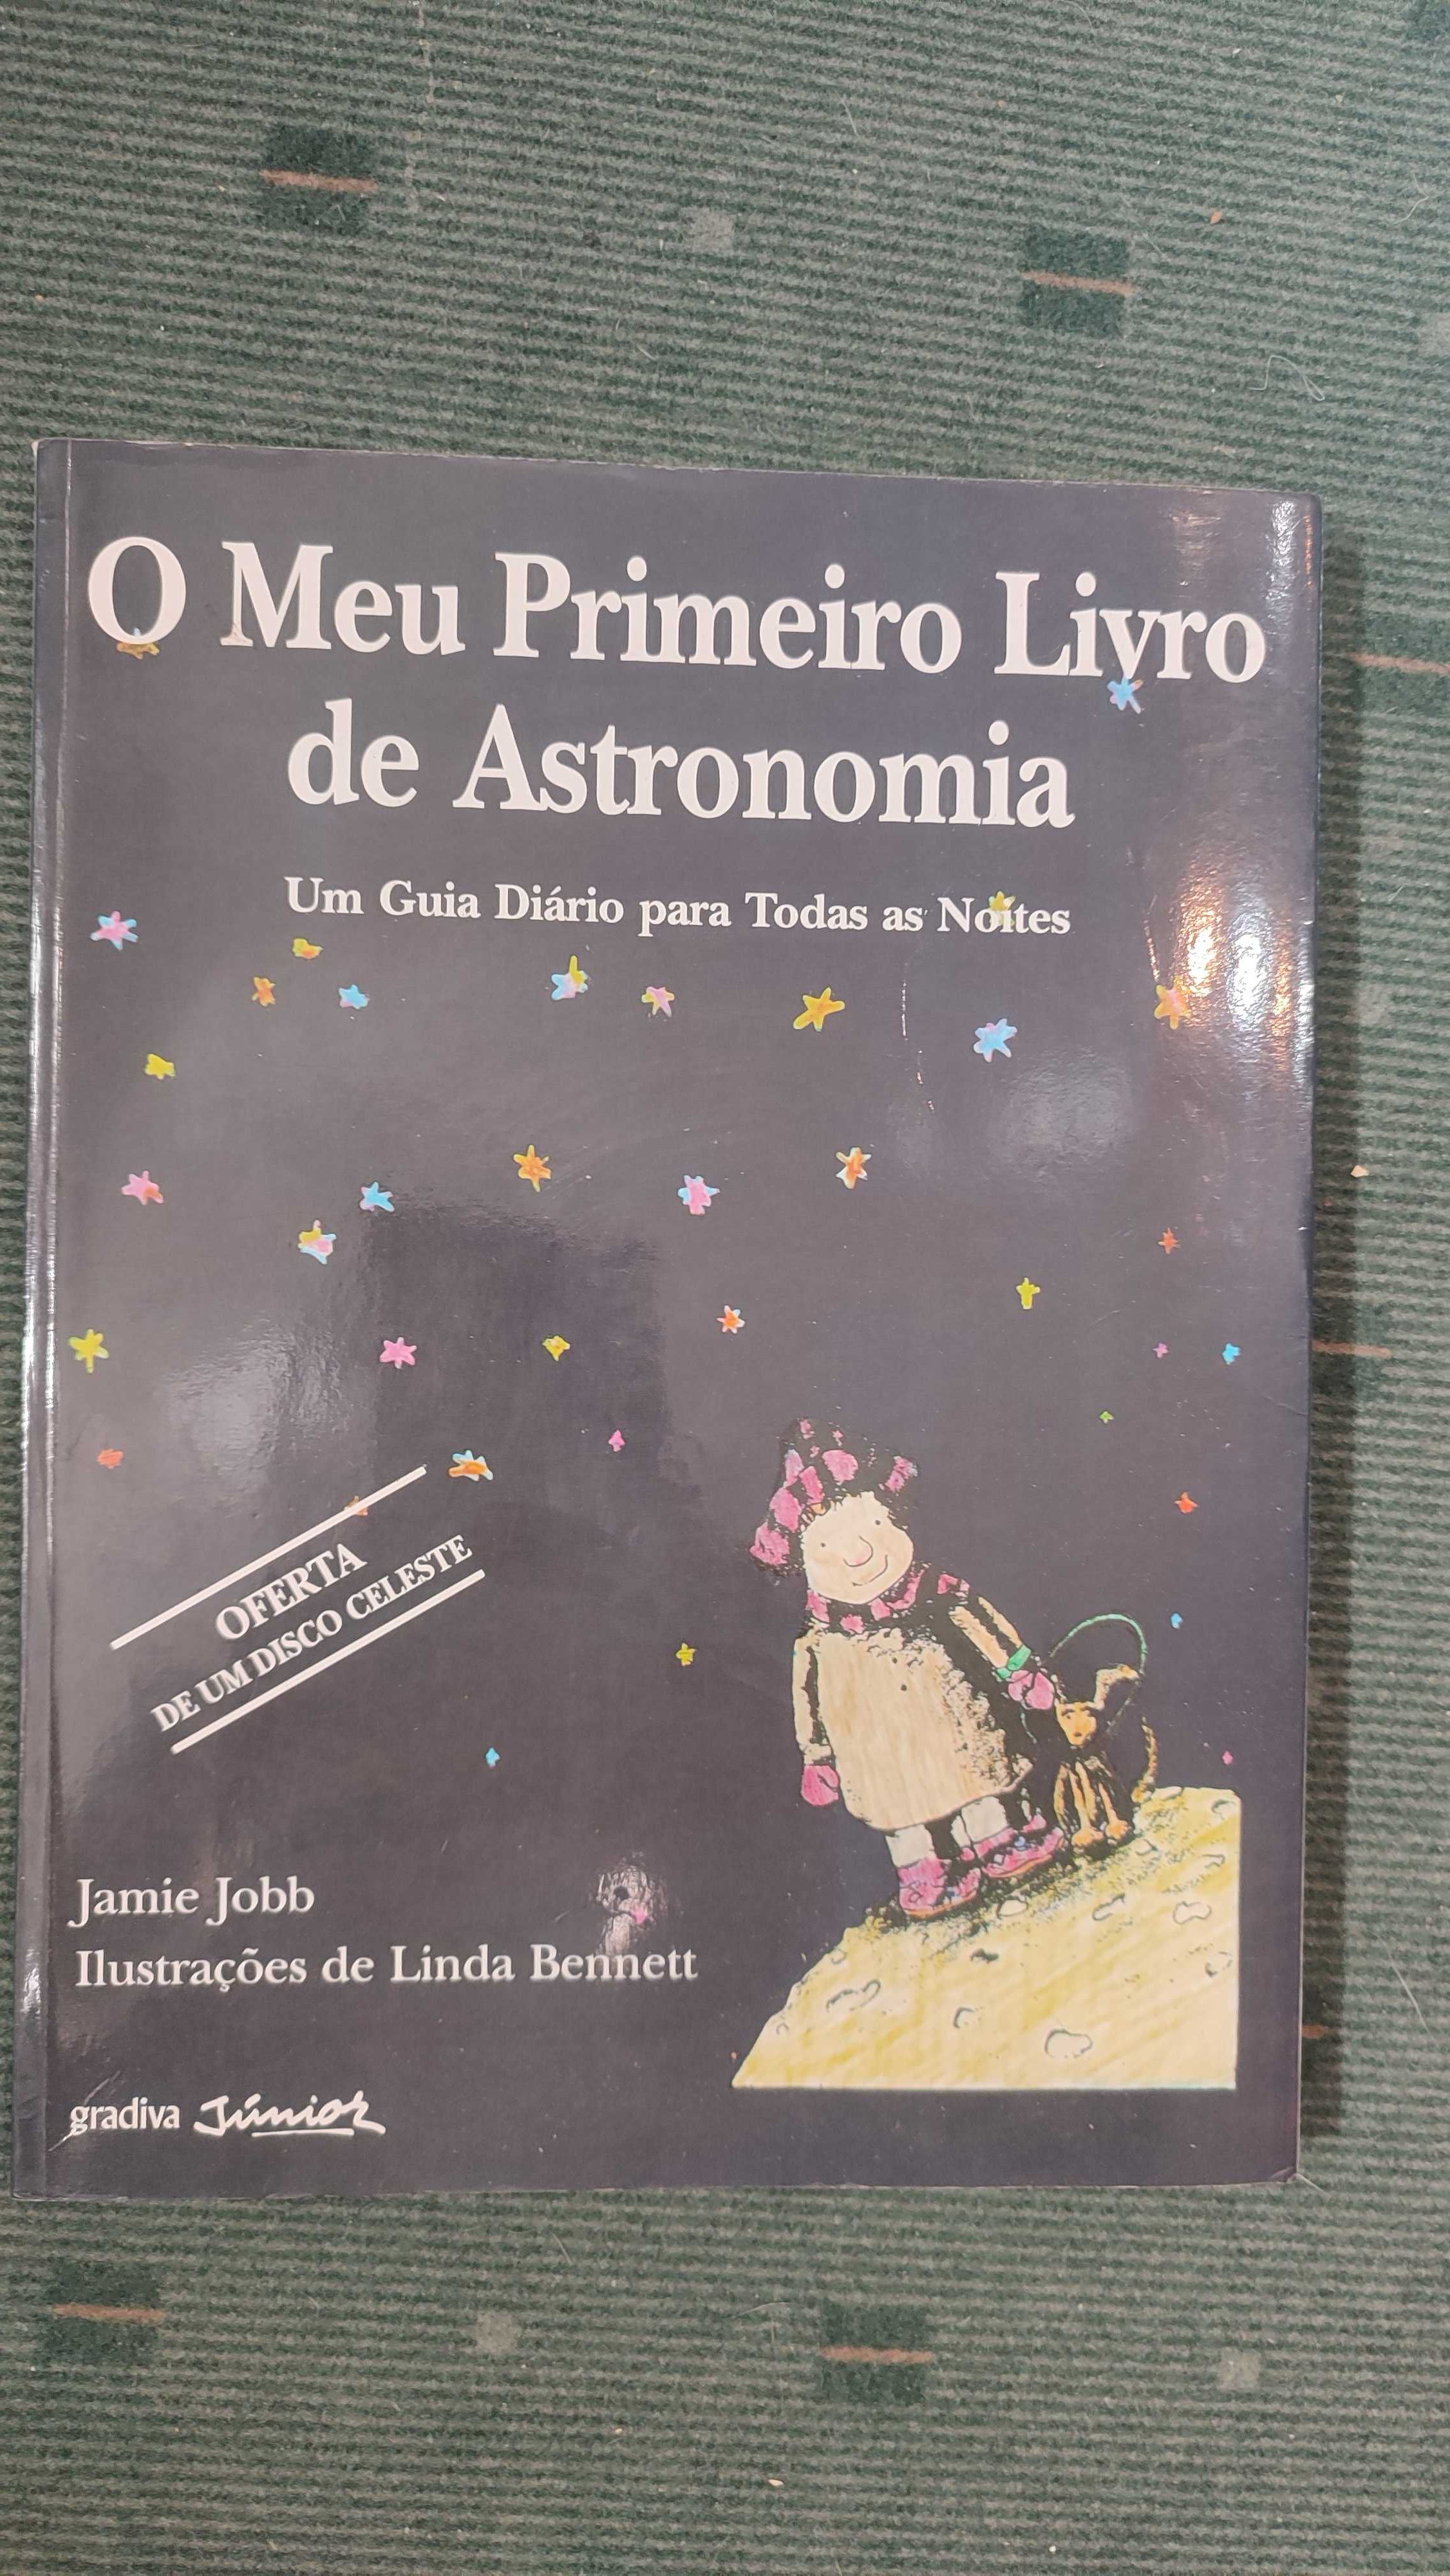 O Meu primeiro livro de Astronomia